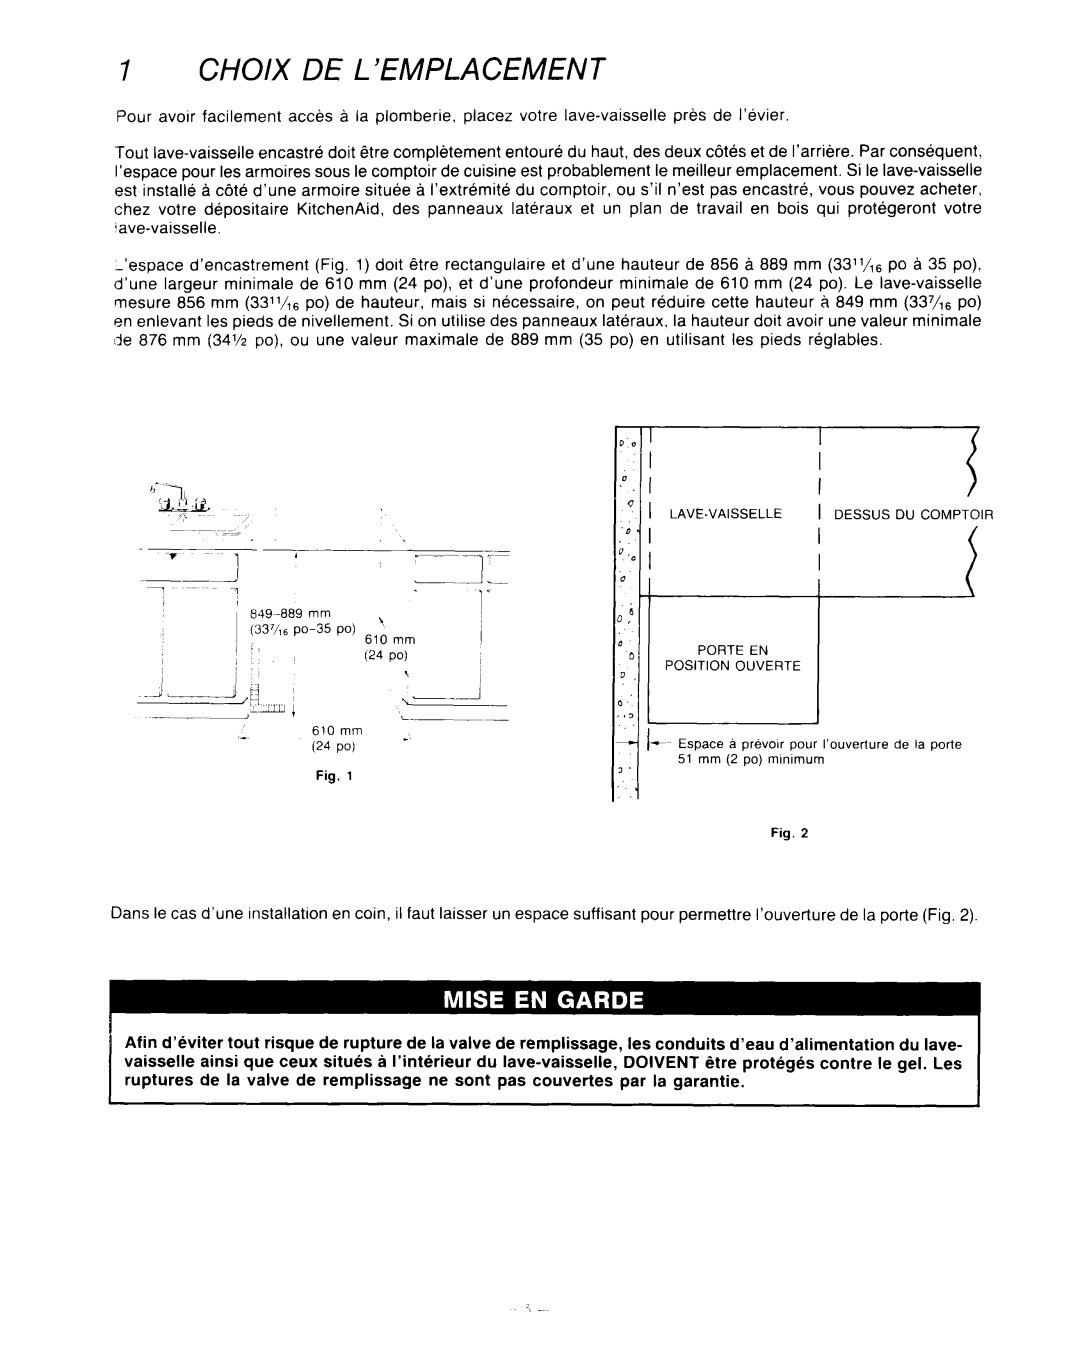 KitchenAid KUD-22 manual Choix De L’Emplacement, J,-13, y’rw 